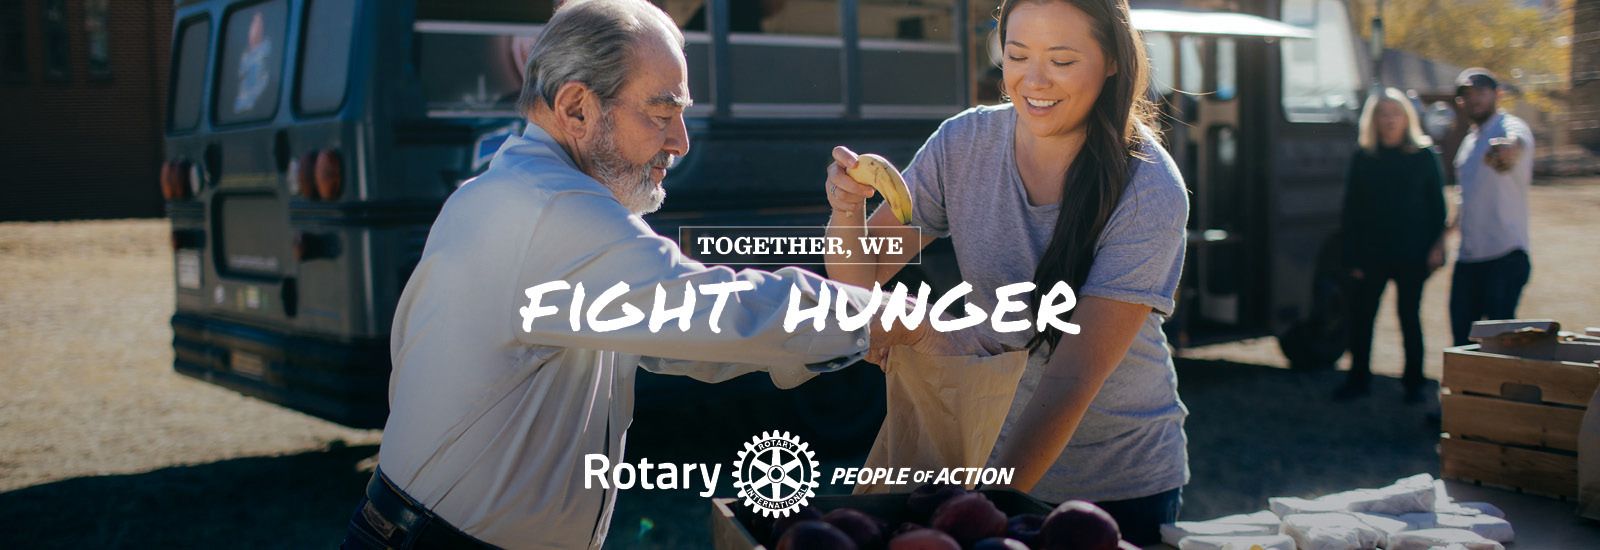 Together We Fight Hunger